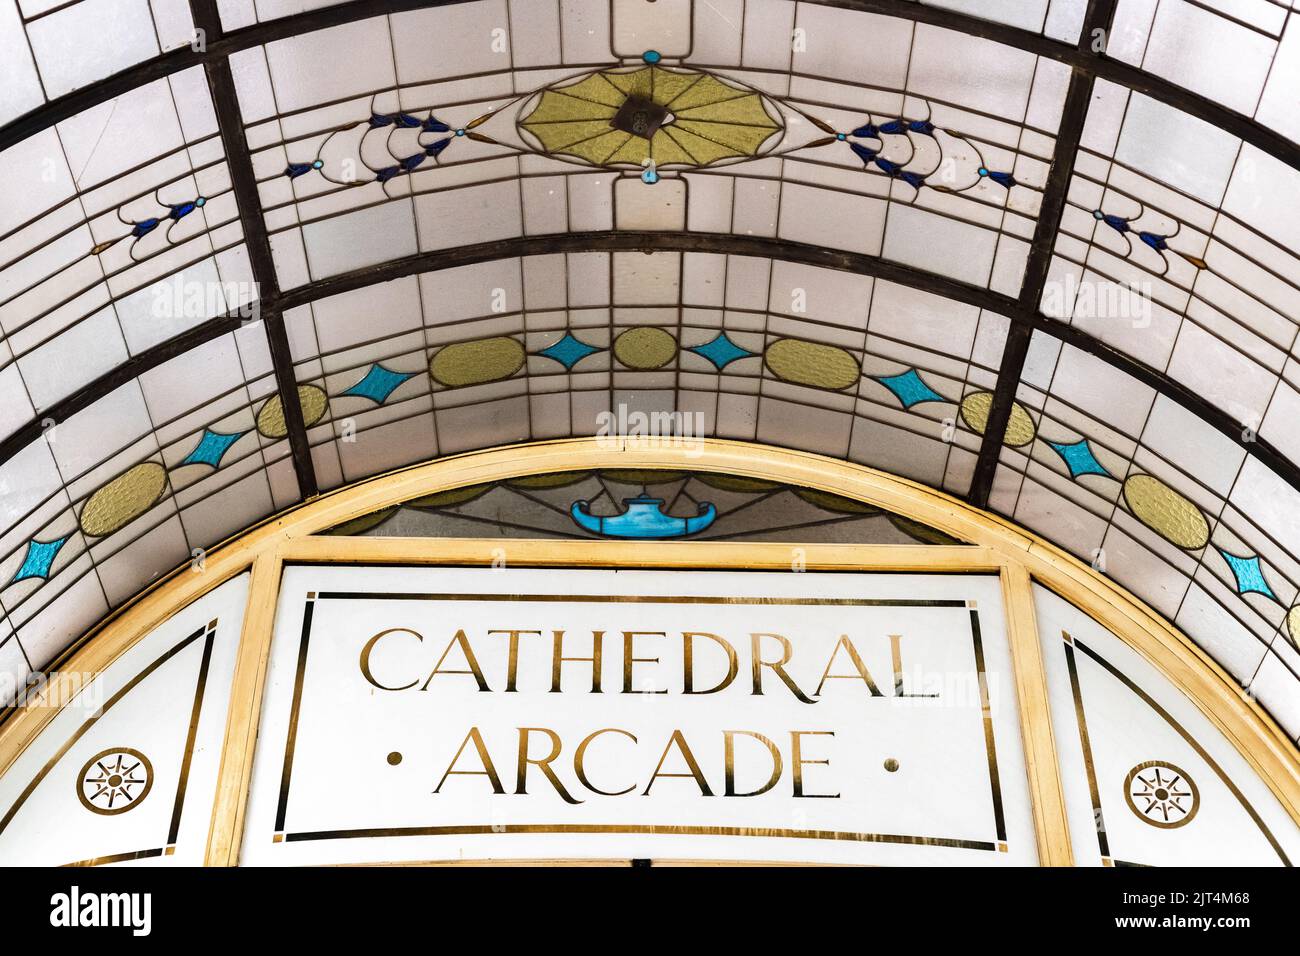 À l'intérieur de l'arcade de la cathédrale de Melbourne, une arcade commerçante historique datant de 1925. Banque D'Images